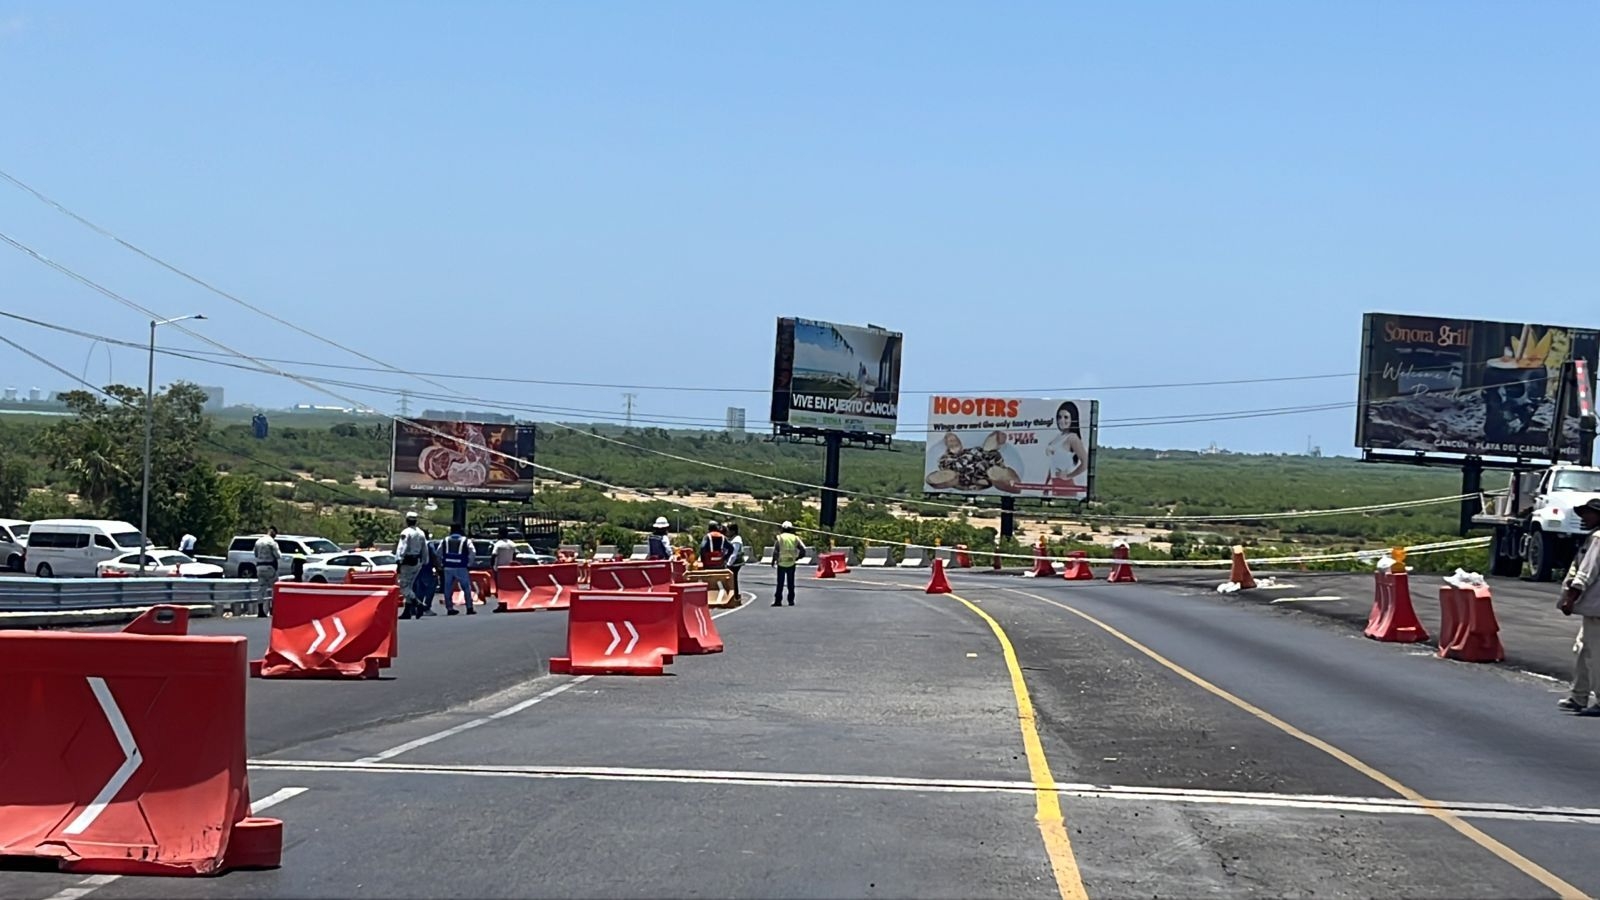 Grúa tira cables de alta tensión sobre puente del aeropuerto de Cancún